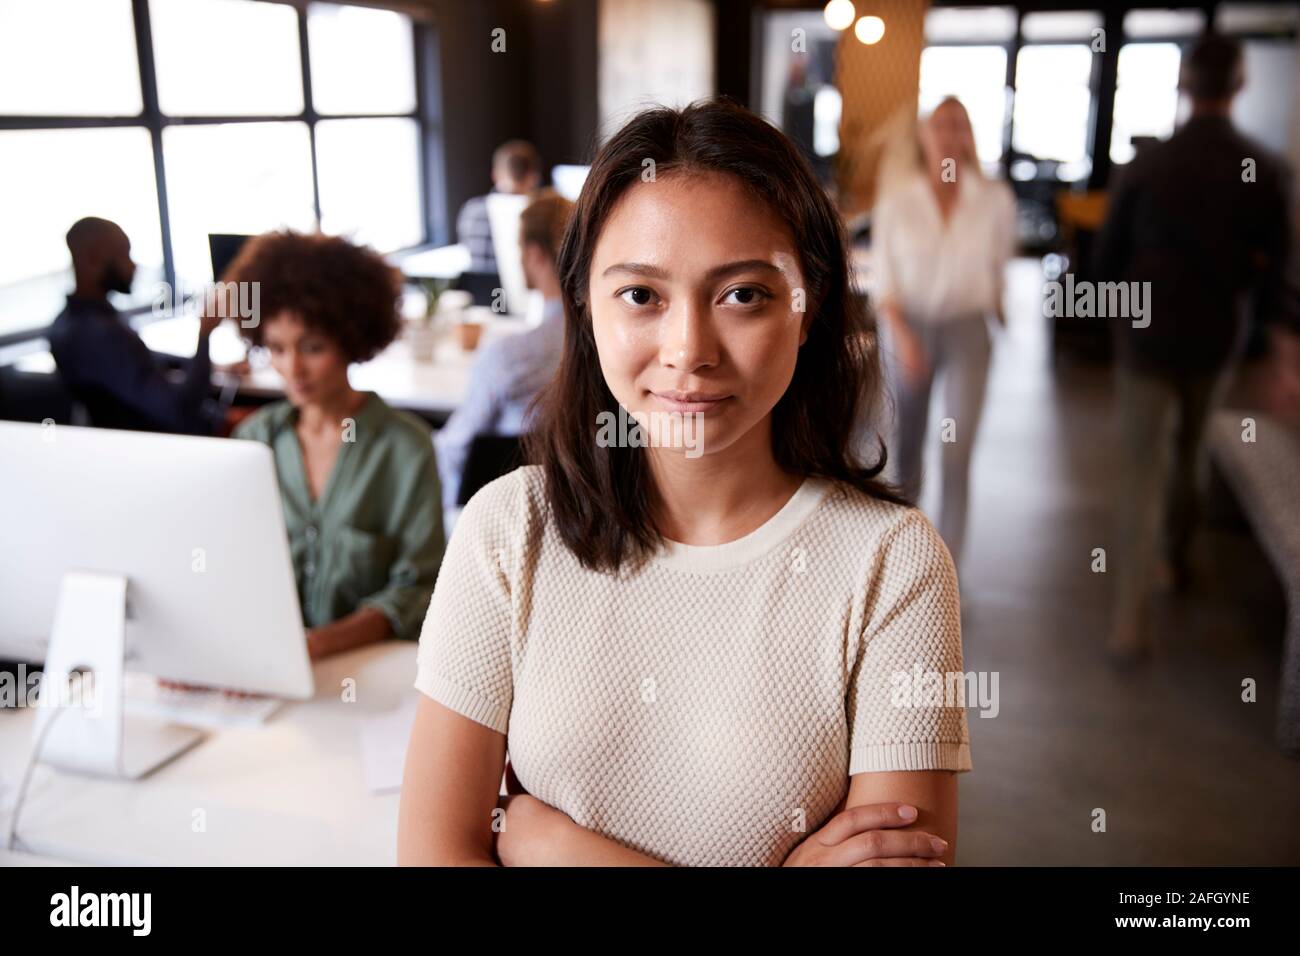 Asia milenaria creativo femenino de pie en una concurrida oficina informal, sonriendo a la cámara Foto de stock